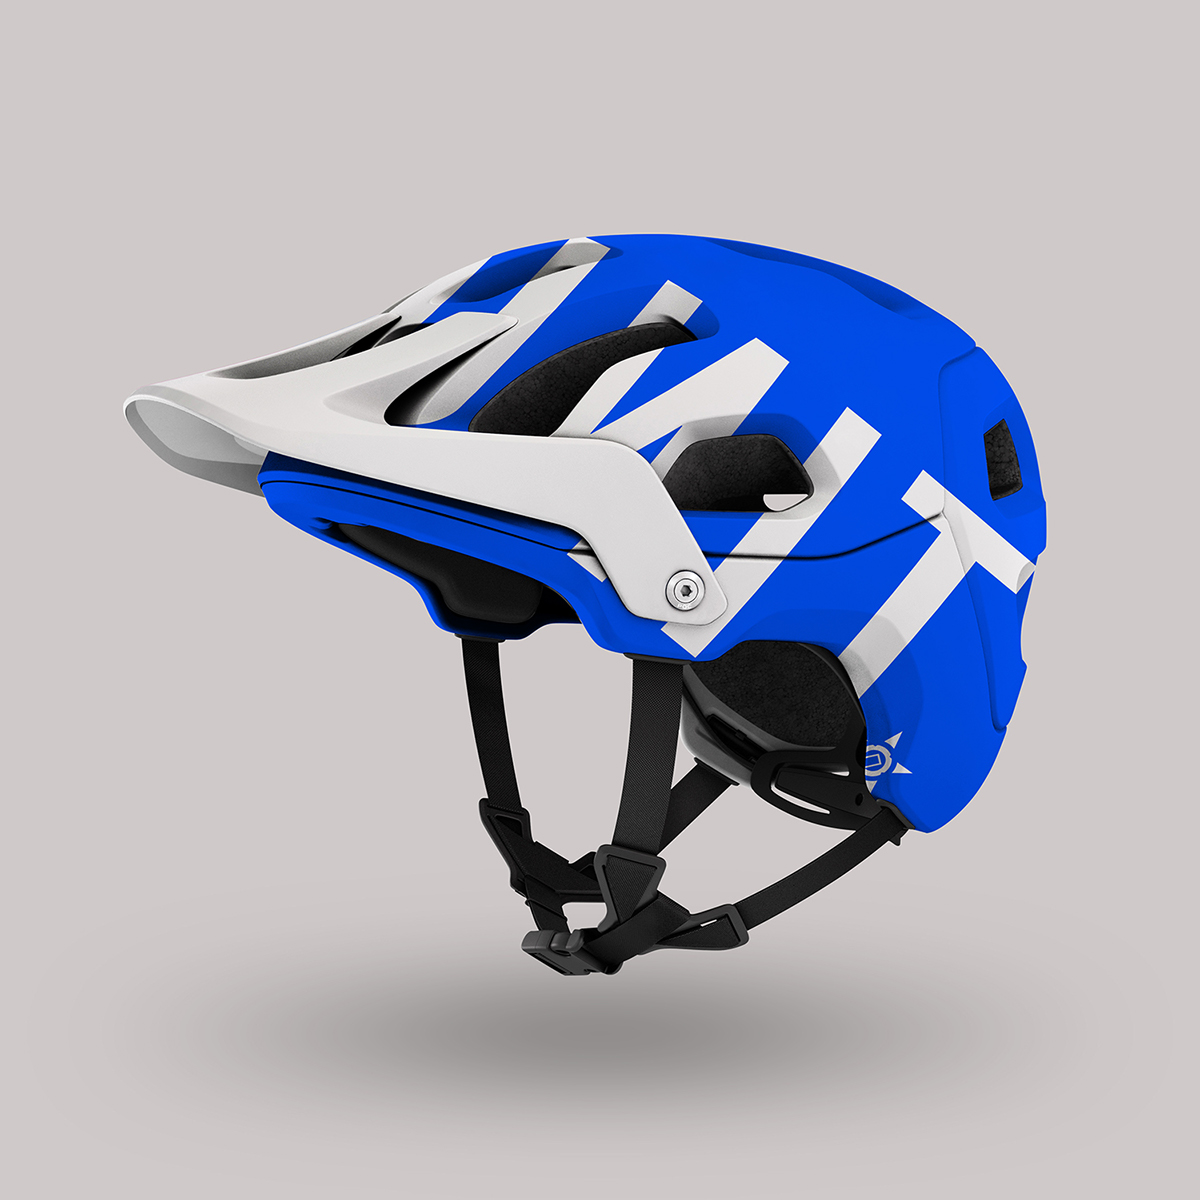 Download 4k Mountain Bike Helmet Psd Mockup By Mockup Depot On Behance